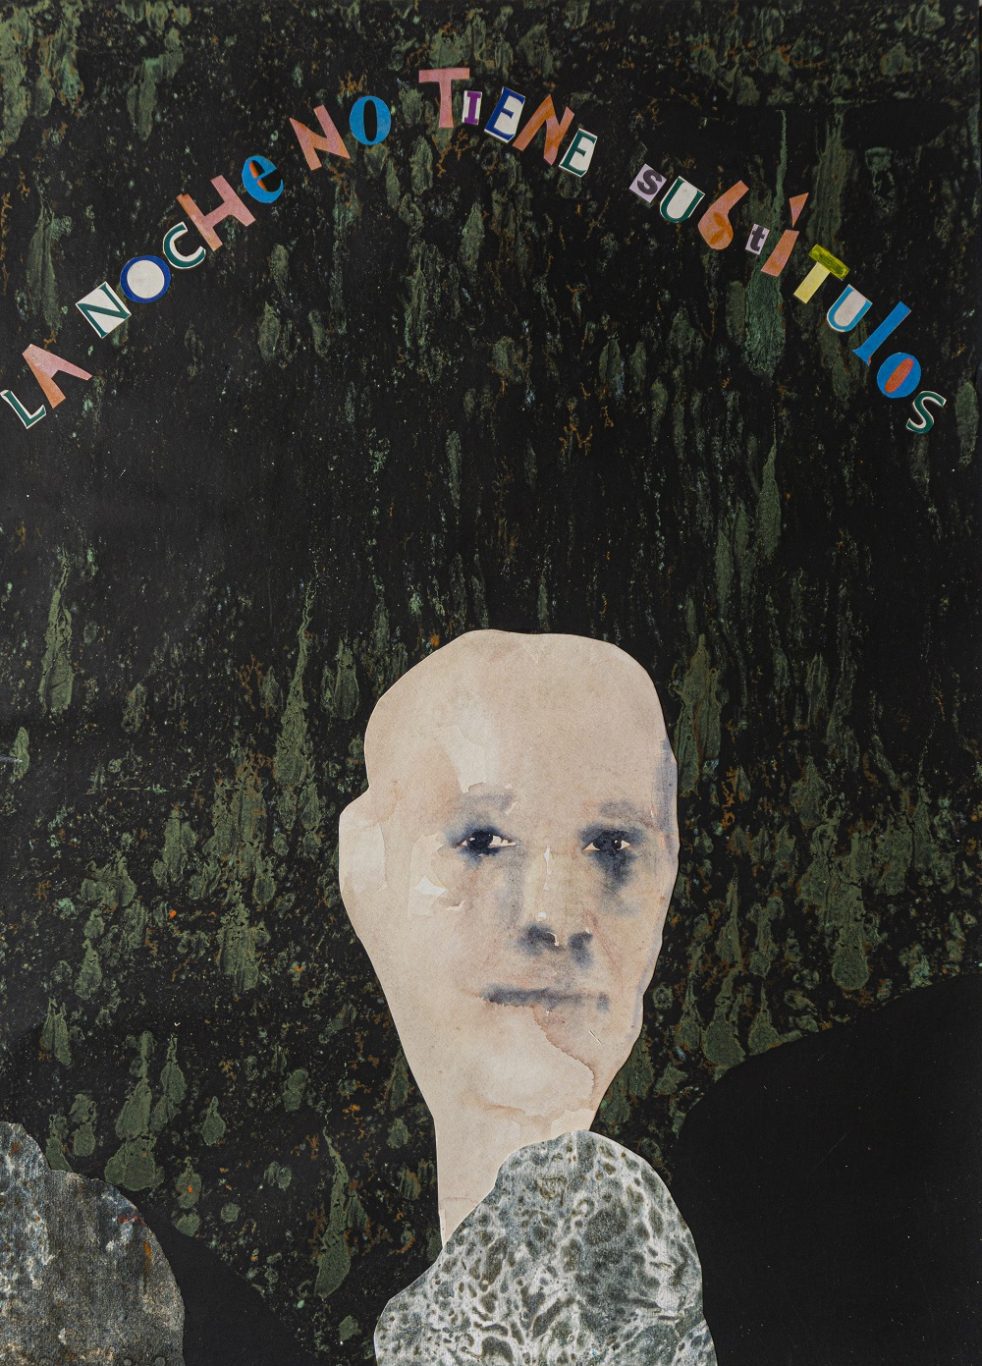 Omar Pérez y Niurka Moreno. S/T, 2021. De la serie “Selfie en el platanal”, Marbling de fondo, dibujo en acuarela y collage, 67.5 x 49.5 cm.
